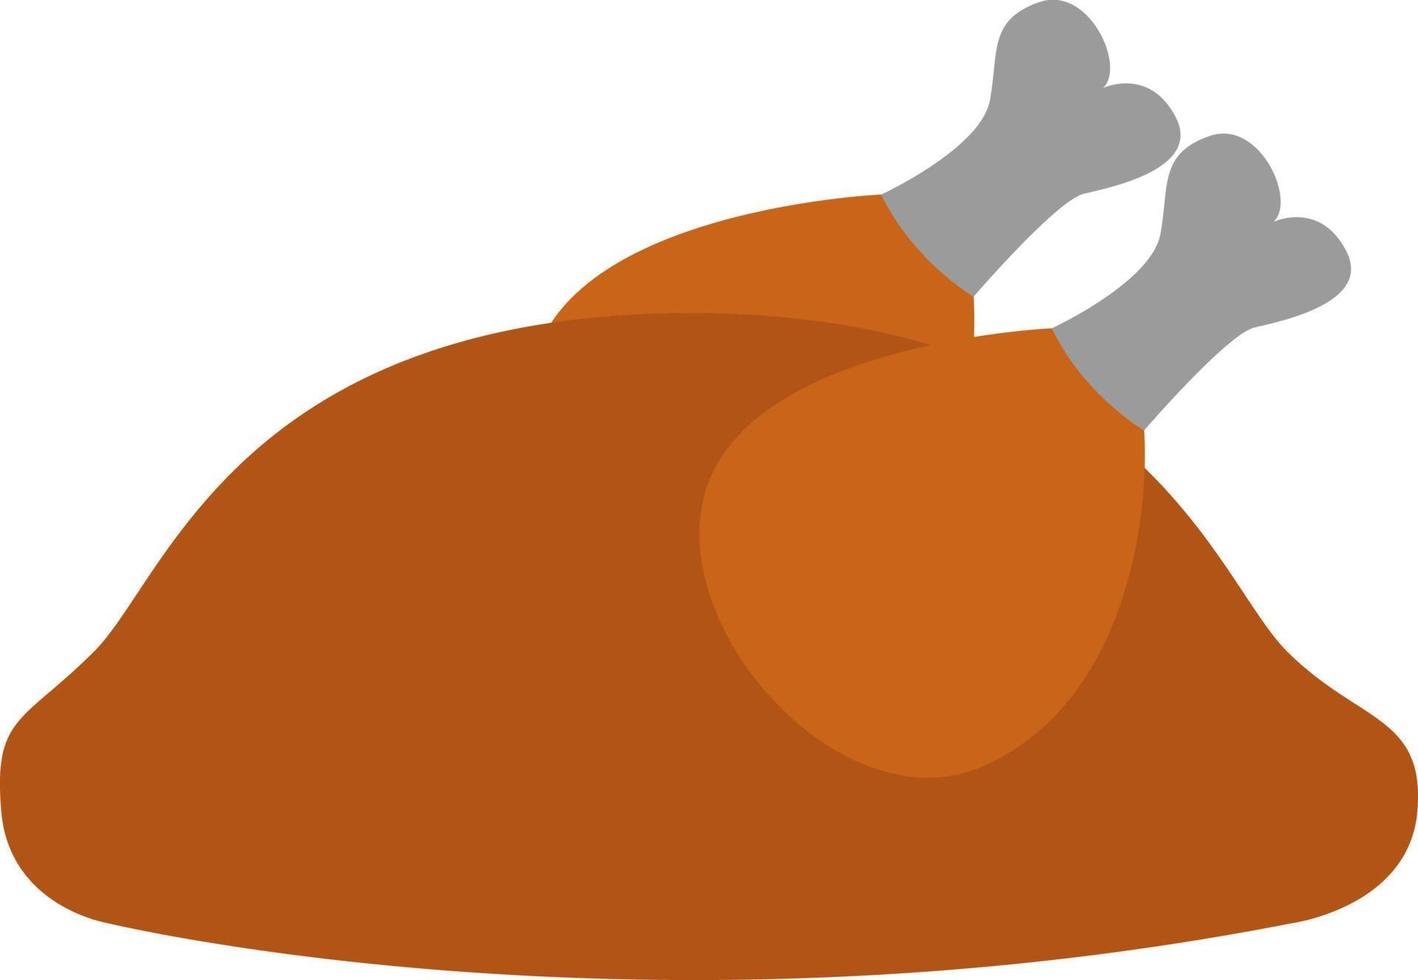 dinde de thanksgiving, illustration, vecteur sur fond blanc.